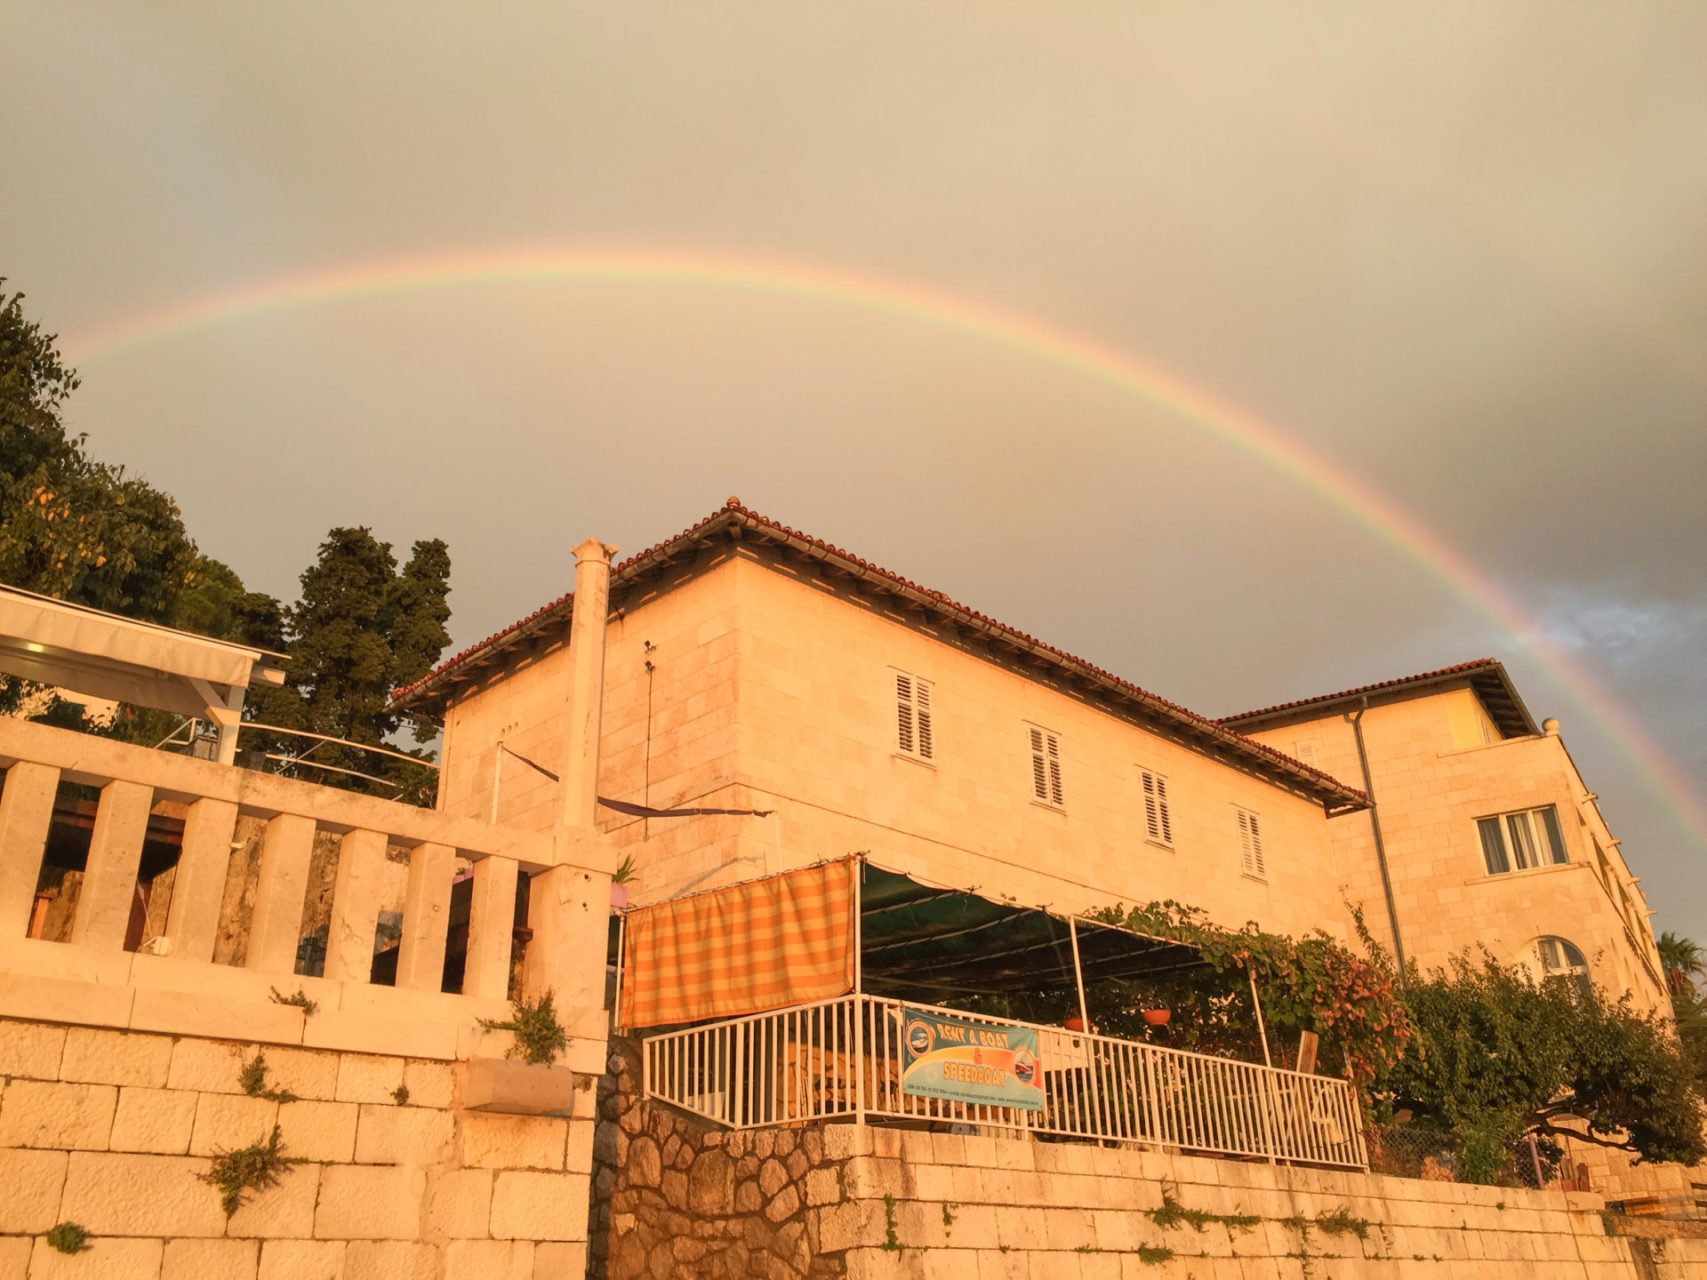 Regenbogen über Steinhäusern auf der dalmatischen Insel Hvar